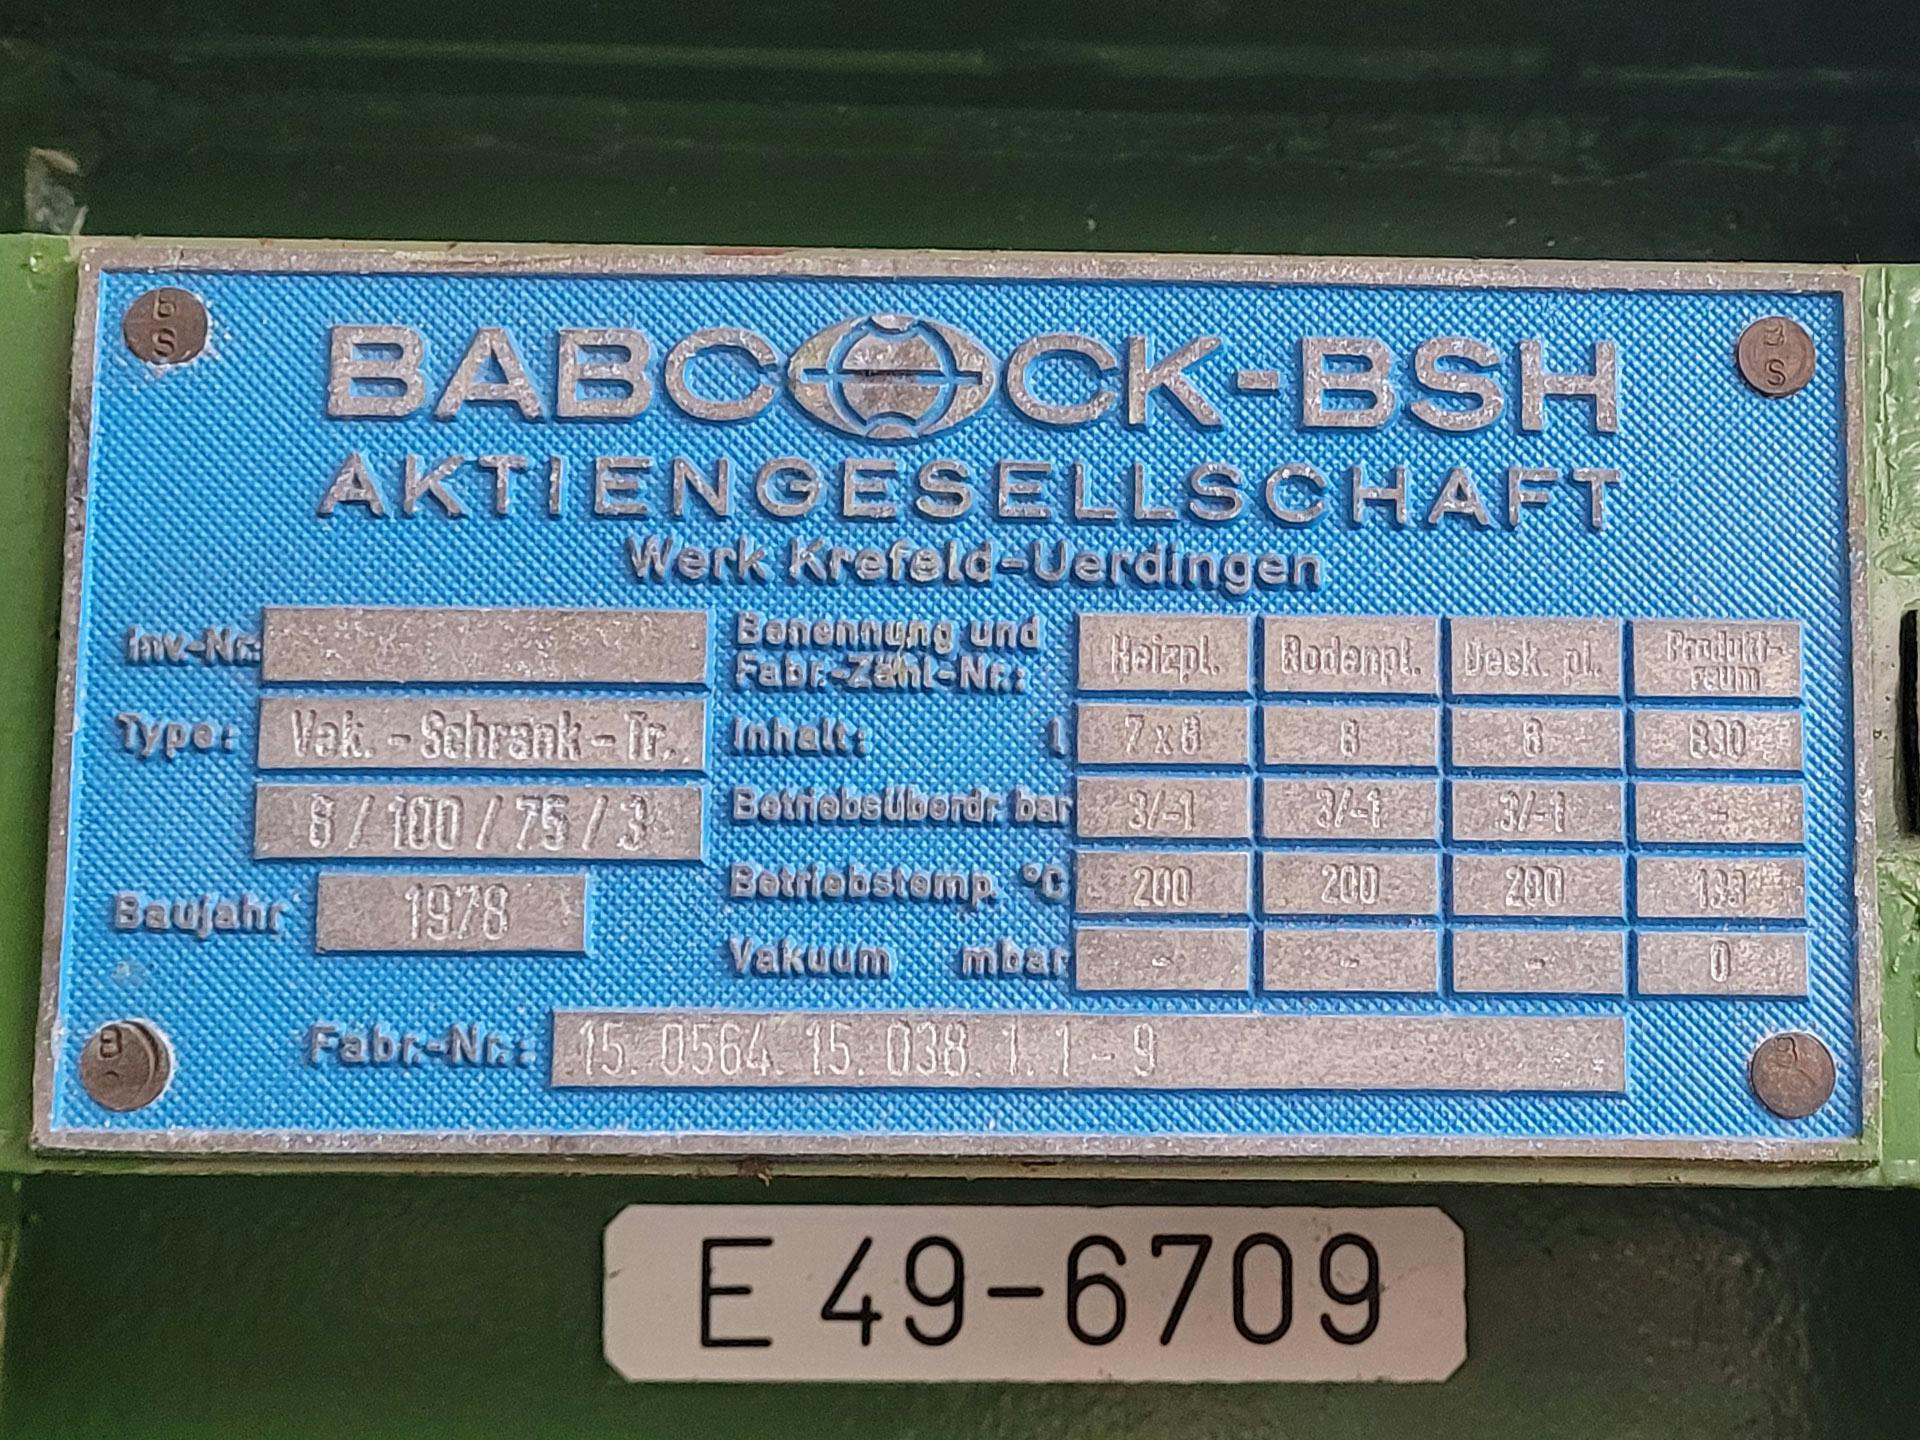 Babcock-BSH 8/100/75-3 - Secador de bandejas - image 4